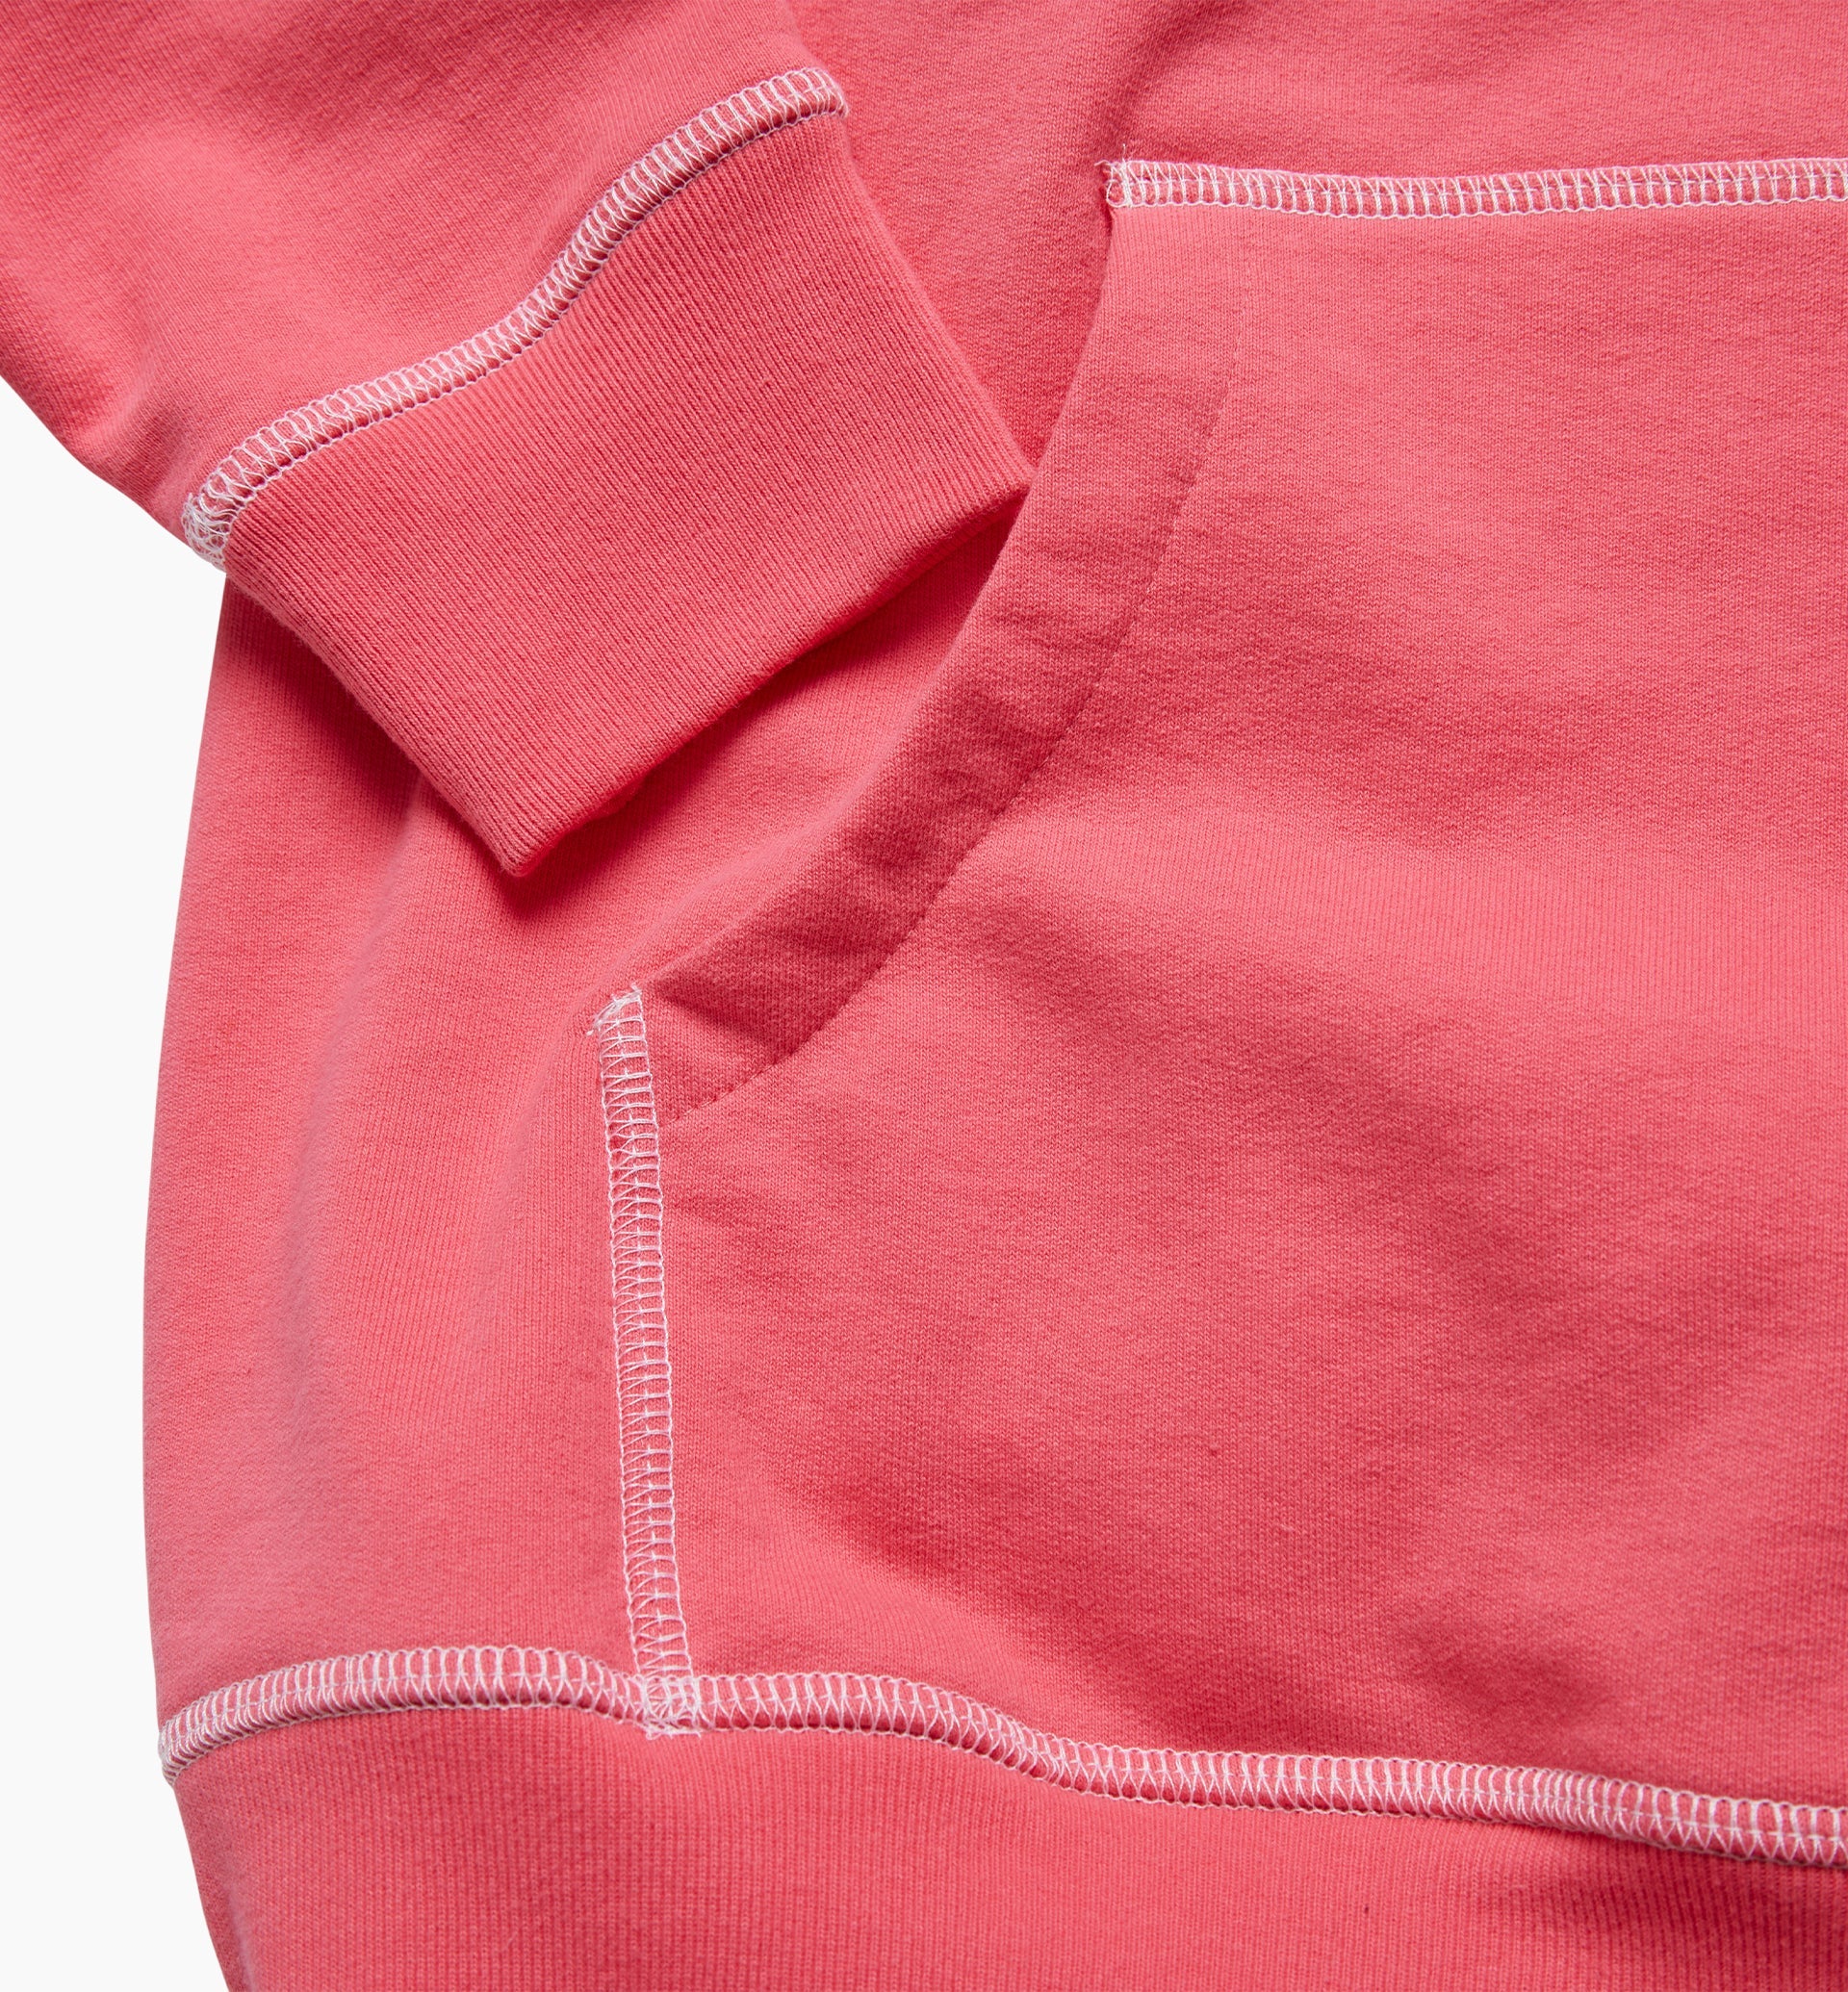 Parra - under pink waters hooded sweatshirt